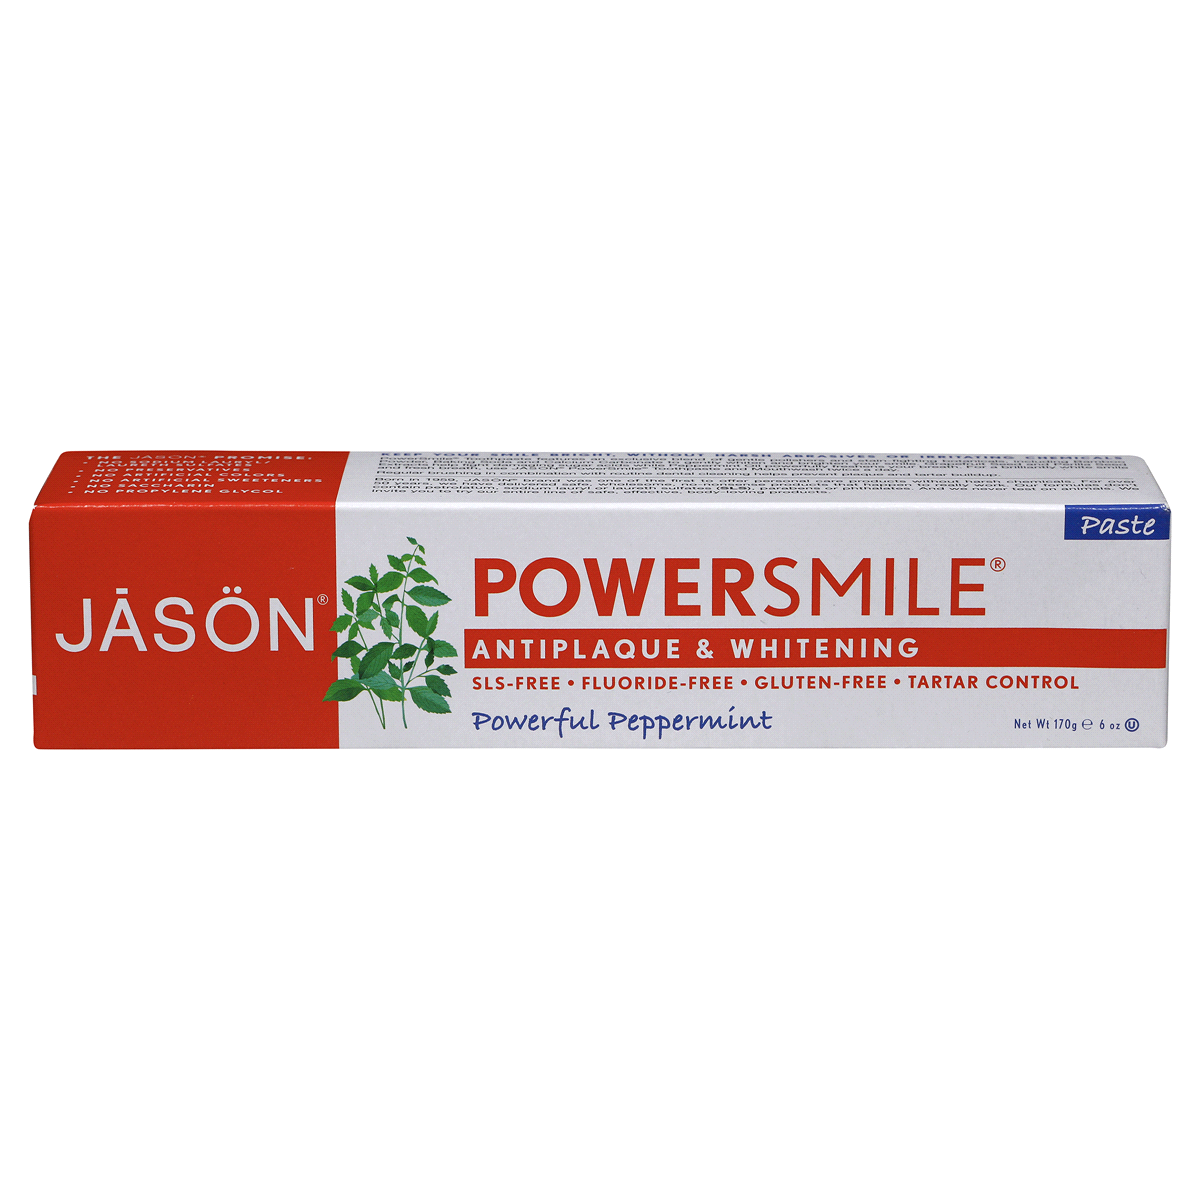 slide 5 of 7, Jason JĀSON Power Smile Powerful Peppermint Whitening Toothpaste 6 oz. Box, 6 oz